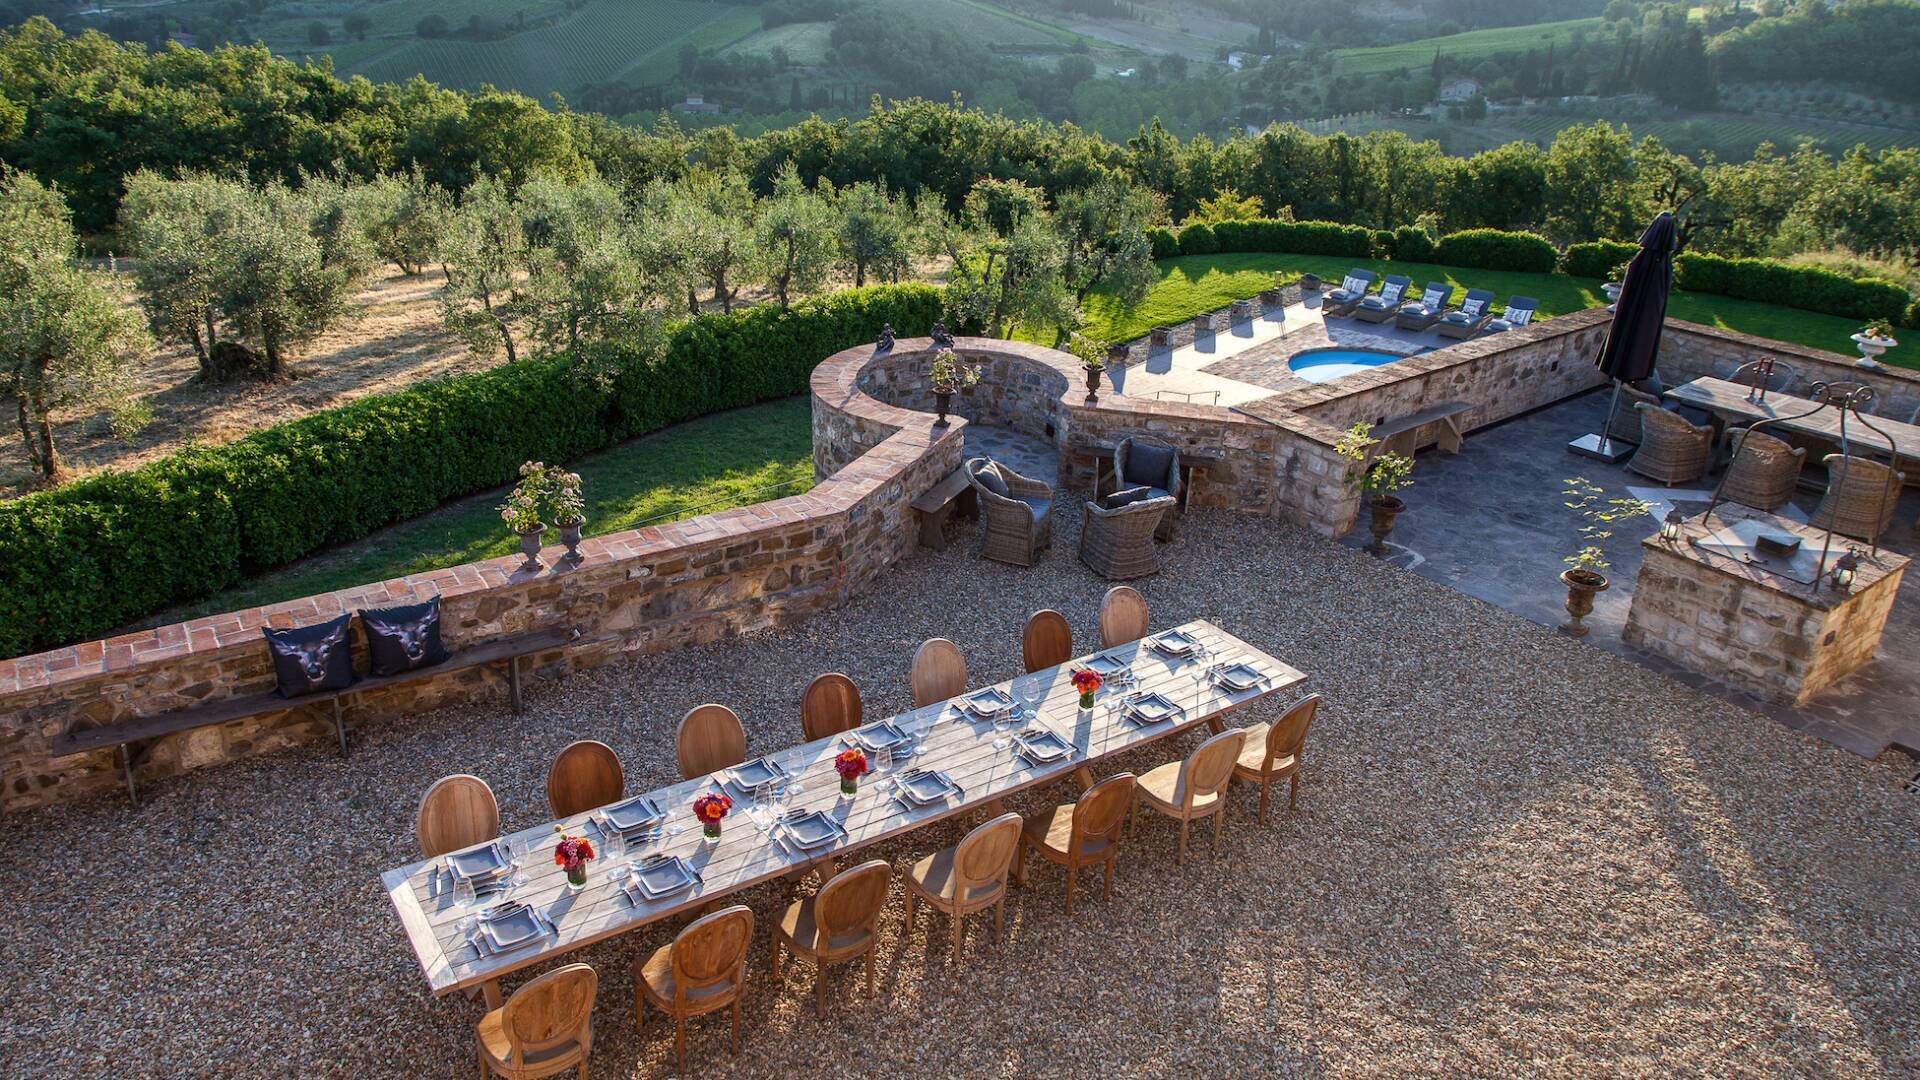 dimoradi-luxury-large-villa-vacation-tuscany-16_1920x1080_im_r7_h0_v0_t1_c000-000-000-255_q70.jpg